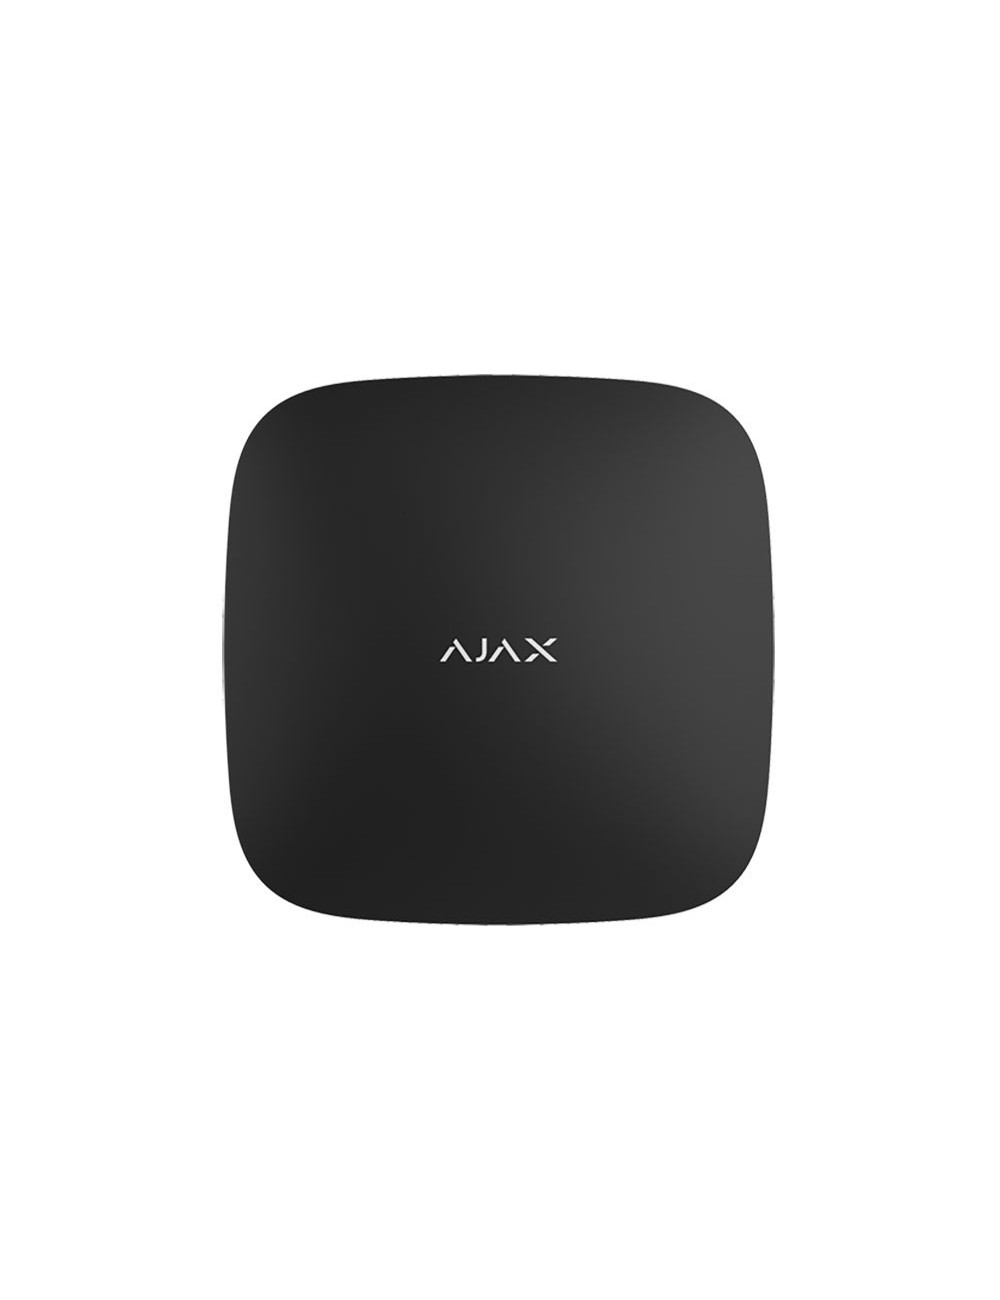 Pannello di controllo di sicurezza Hub wireless Ajax nero